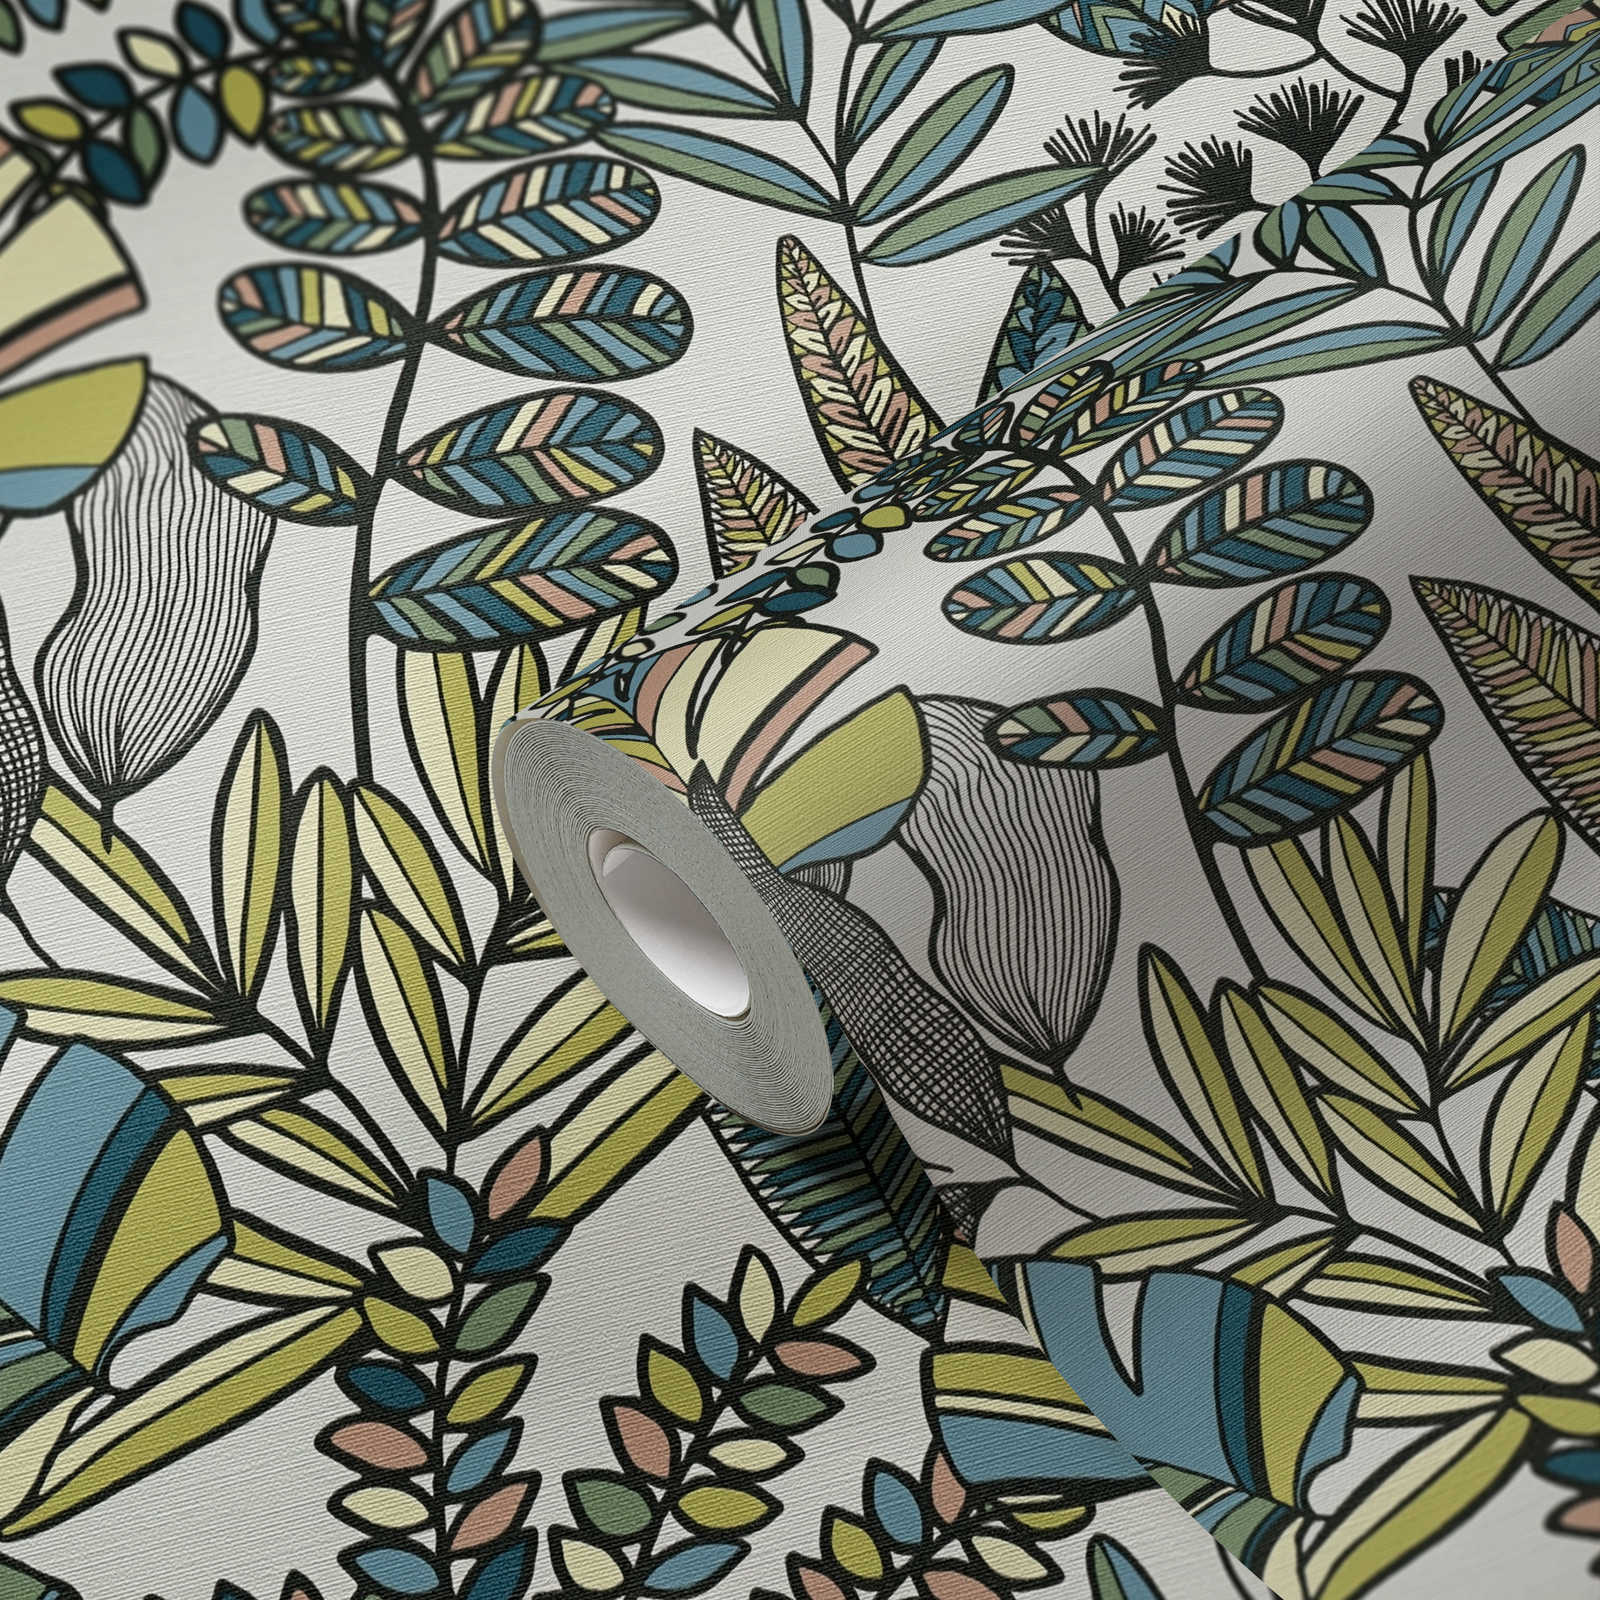             Papier peint intissé avec de grandes feuilles dans des couleurs vives - blanc, noir, bleu
        